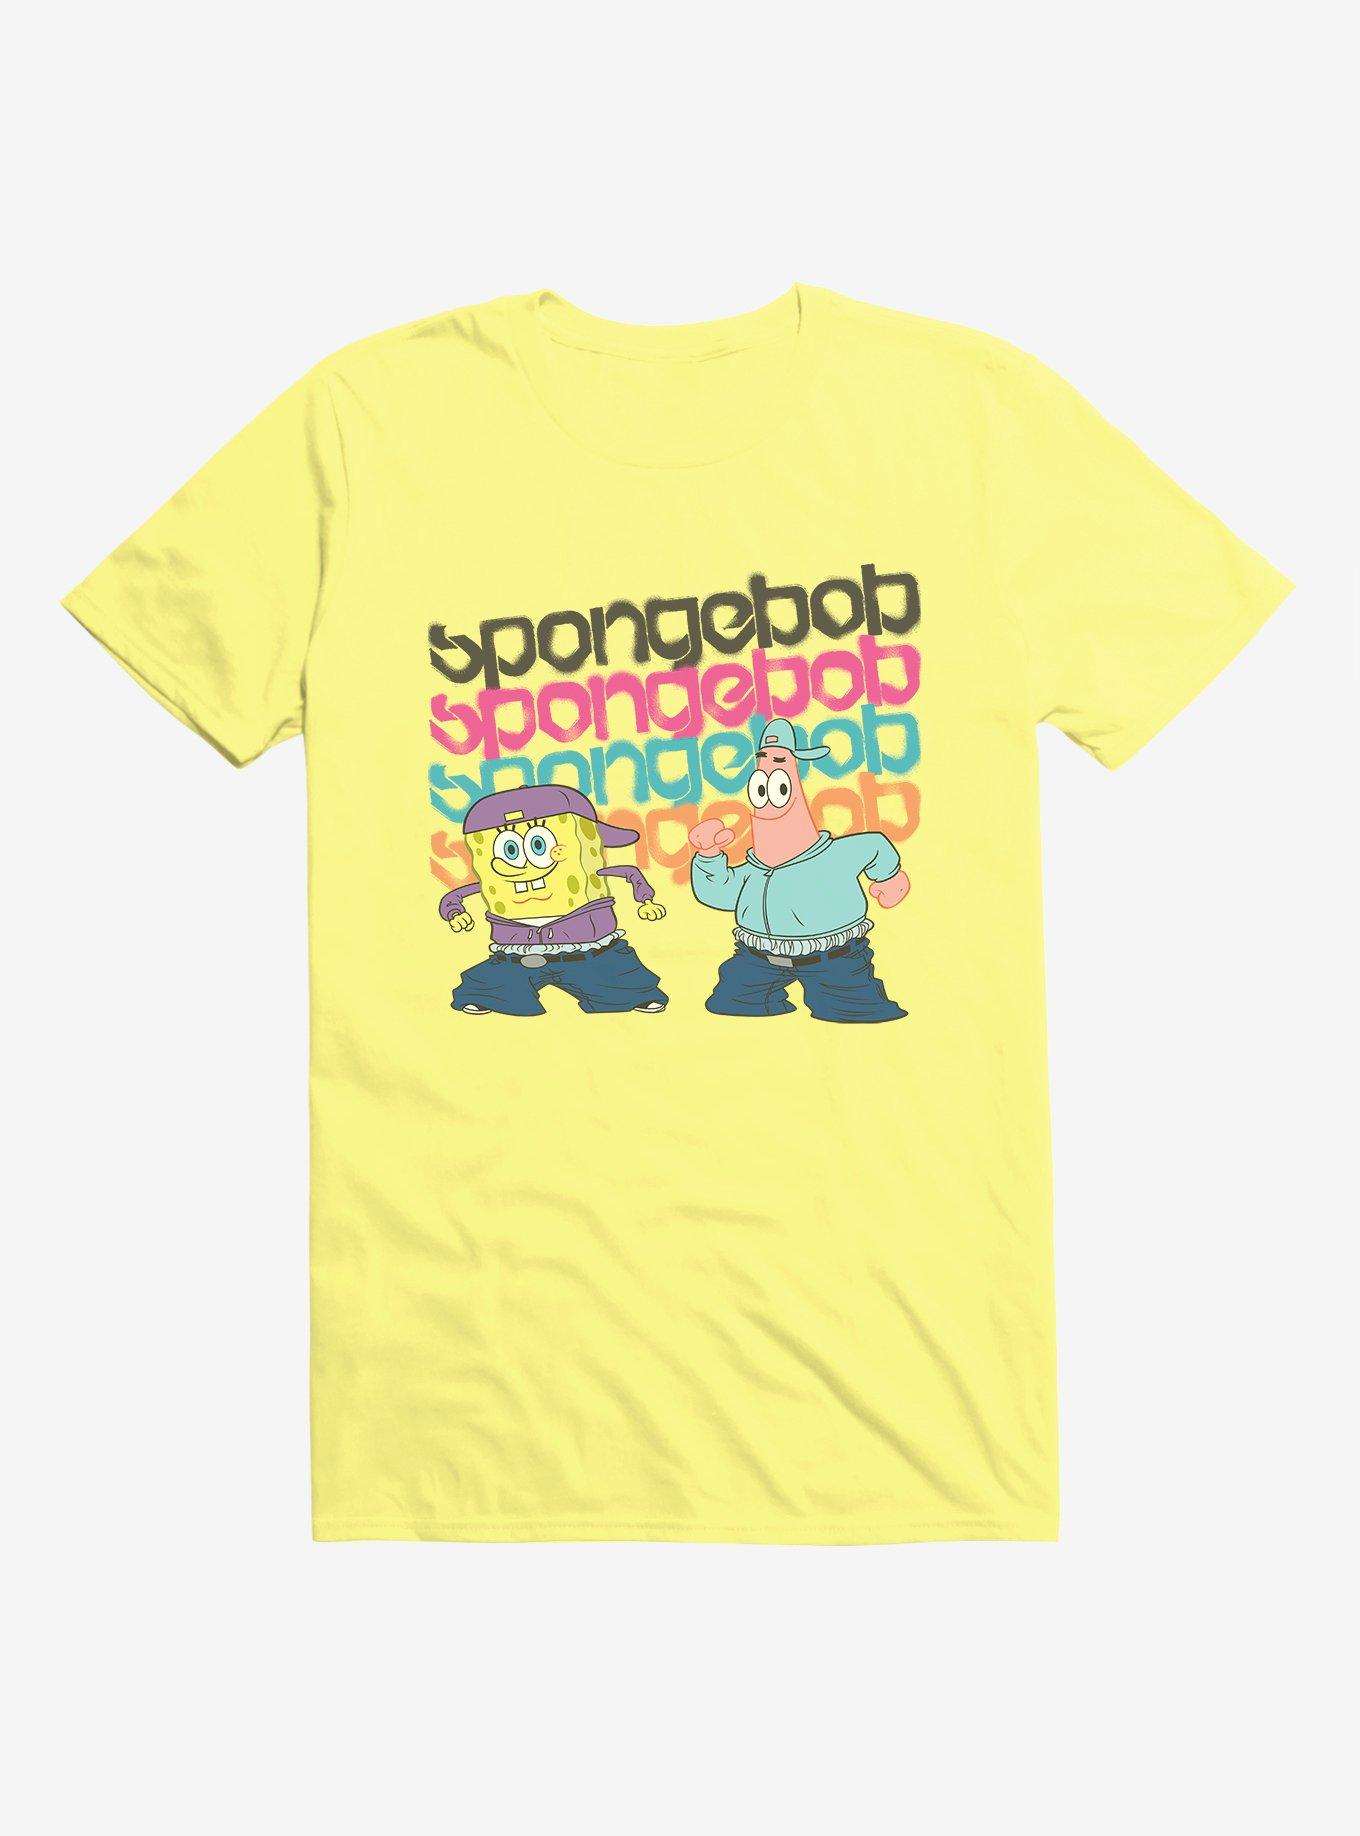 SpongeBob SquarePants Dance Crew Patrick T-Shirt